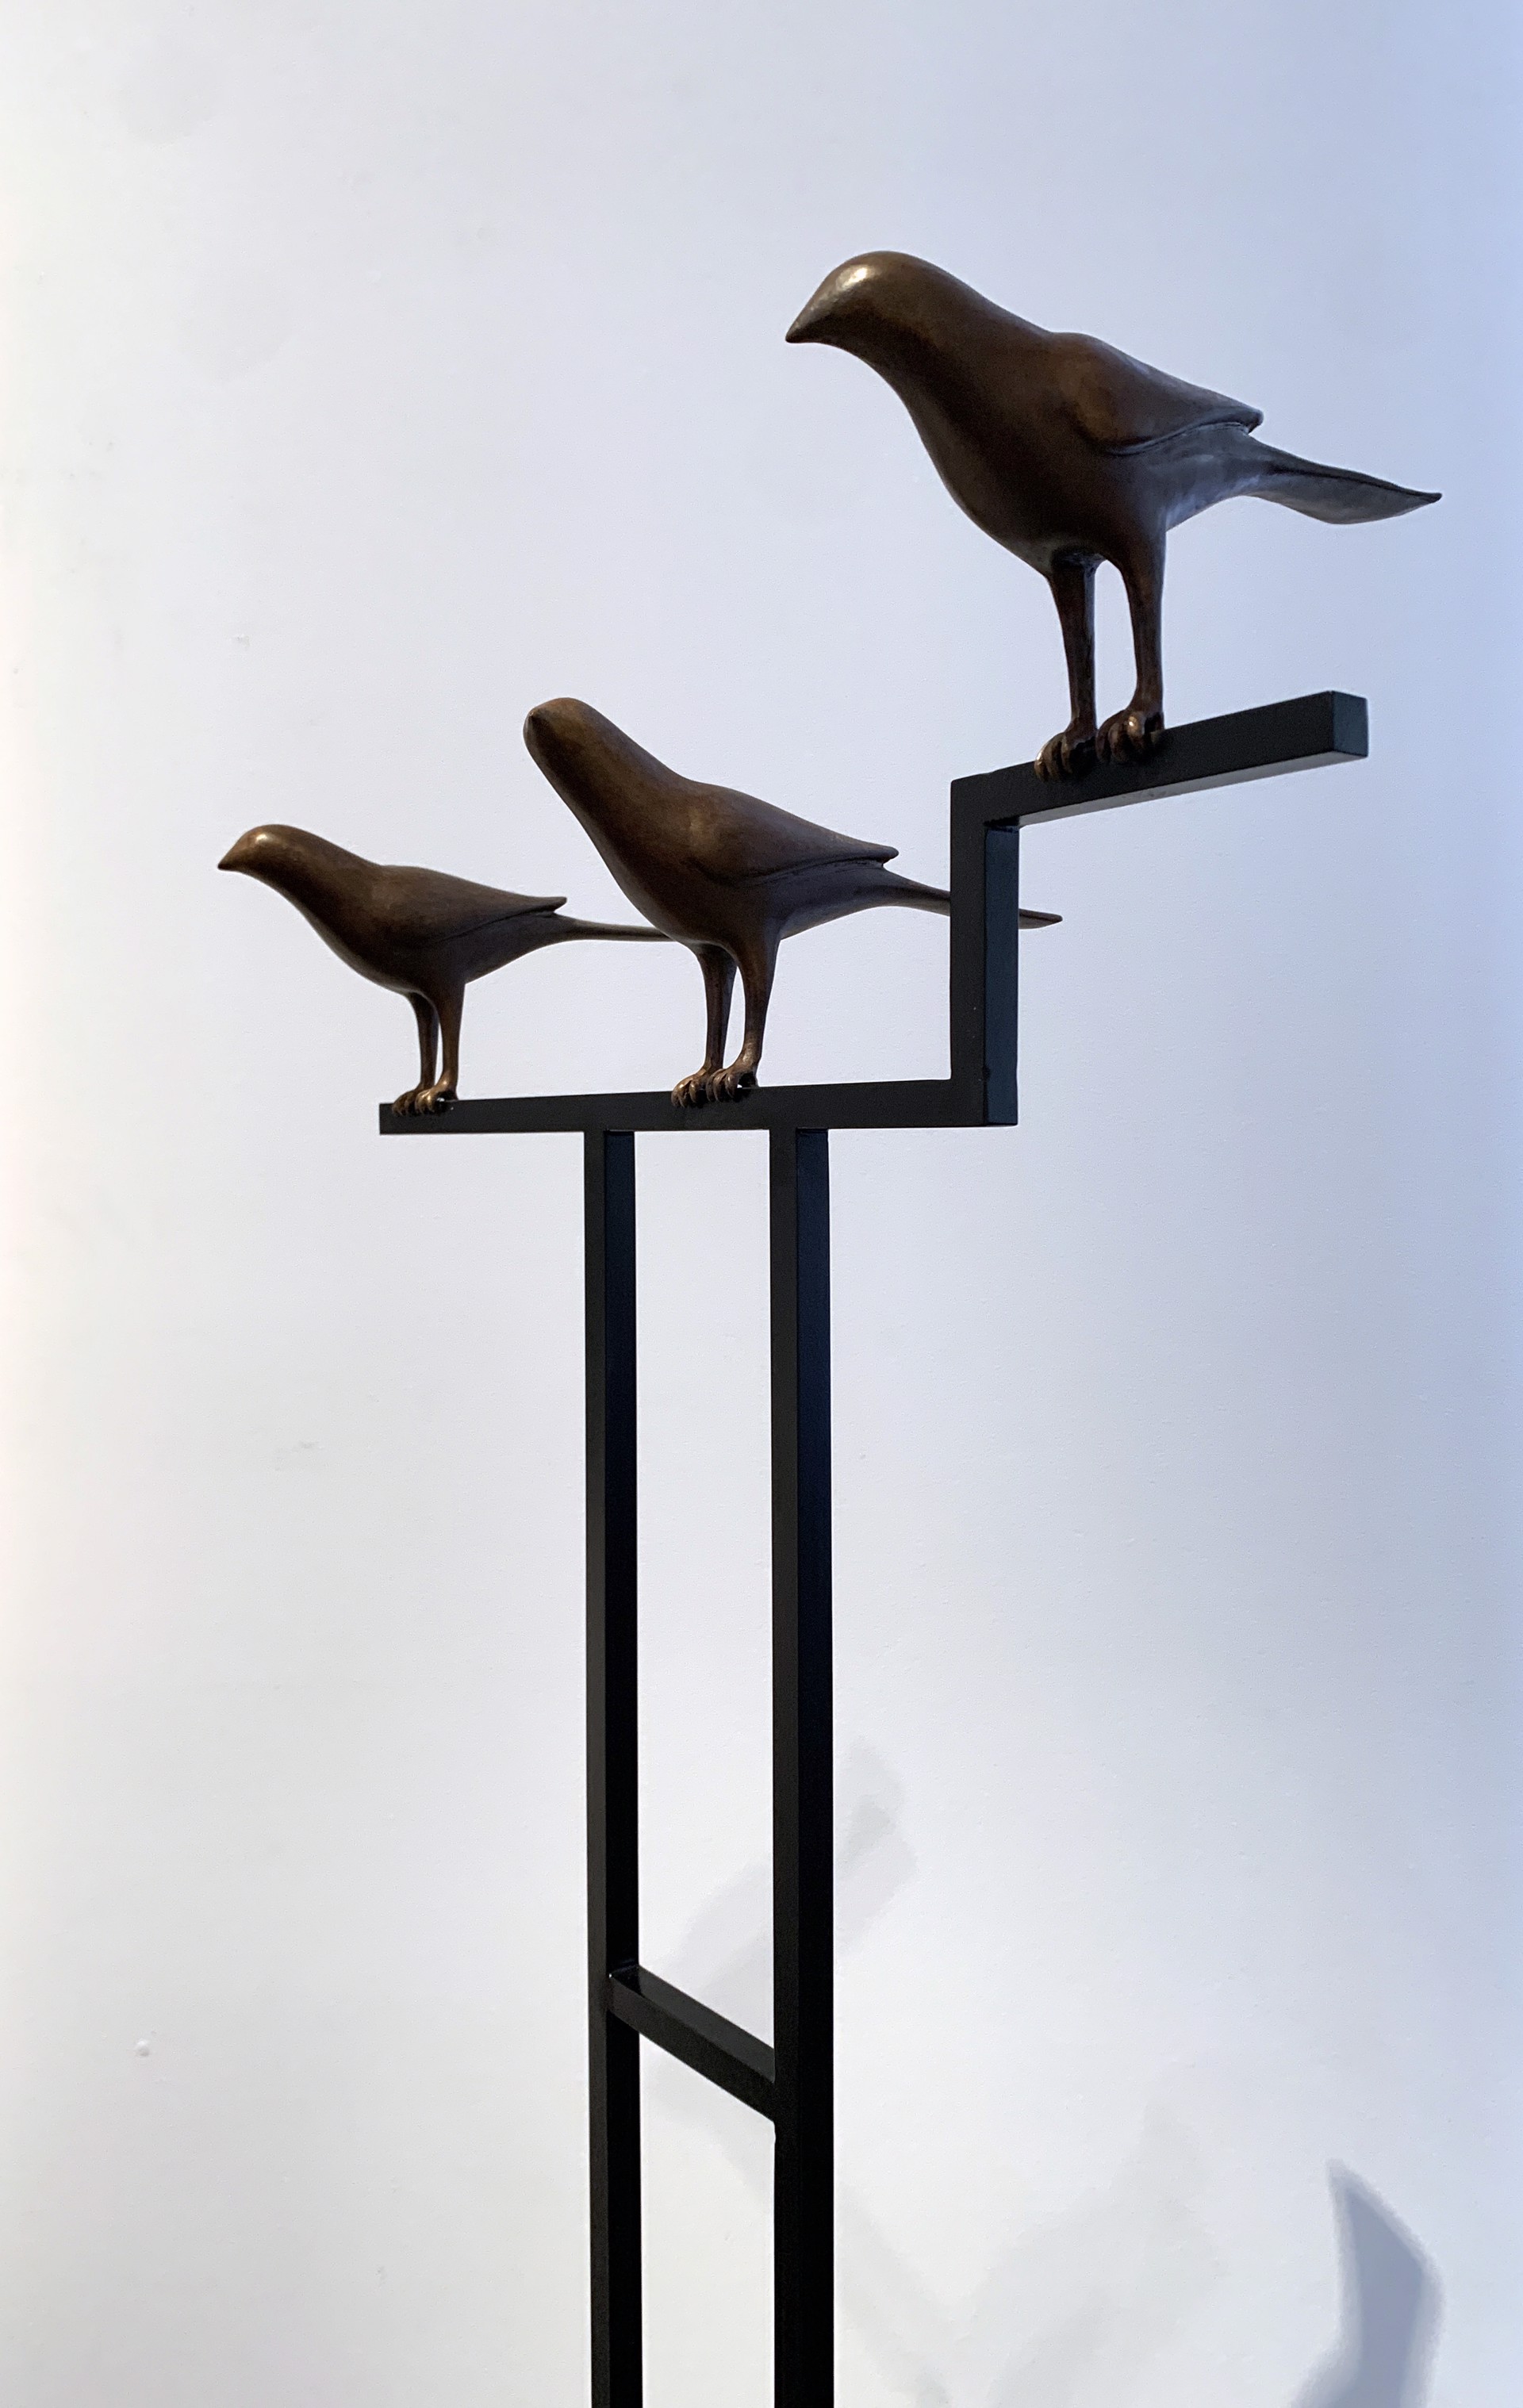 Three Birds by Gwynn Murrill